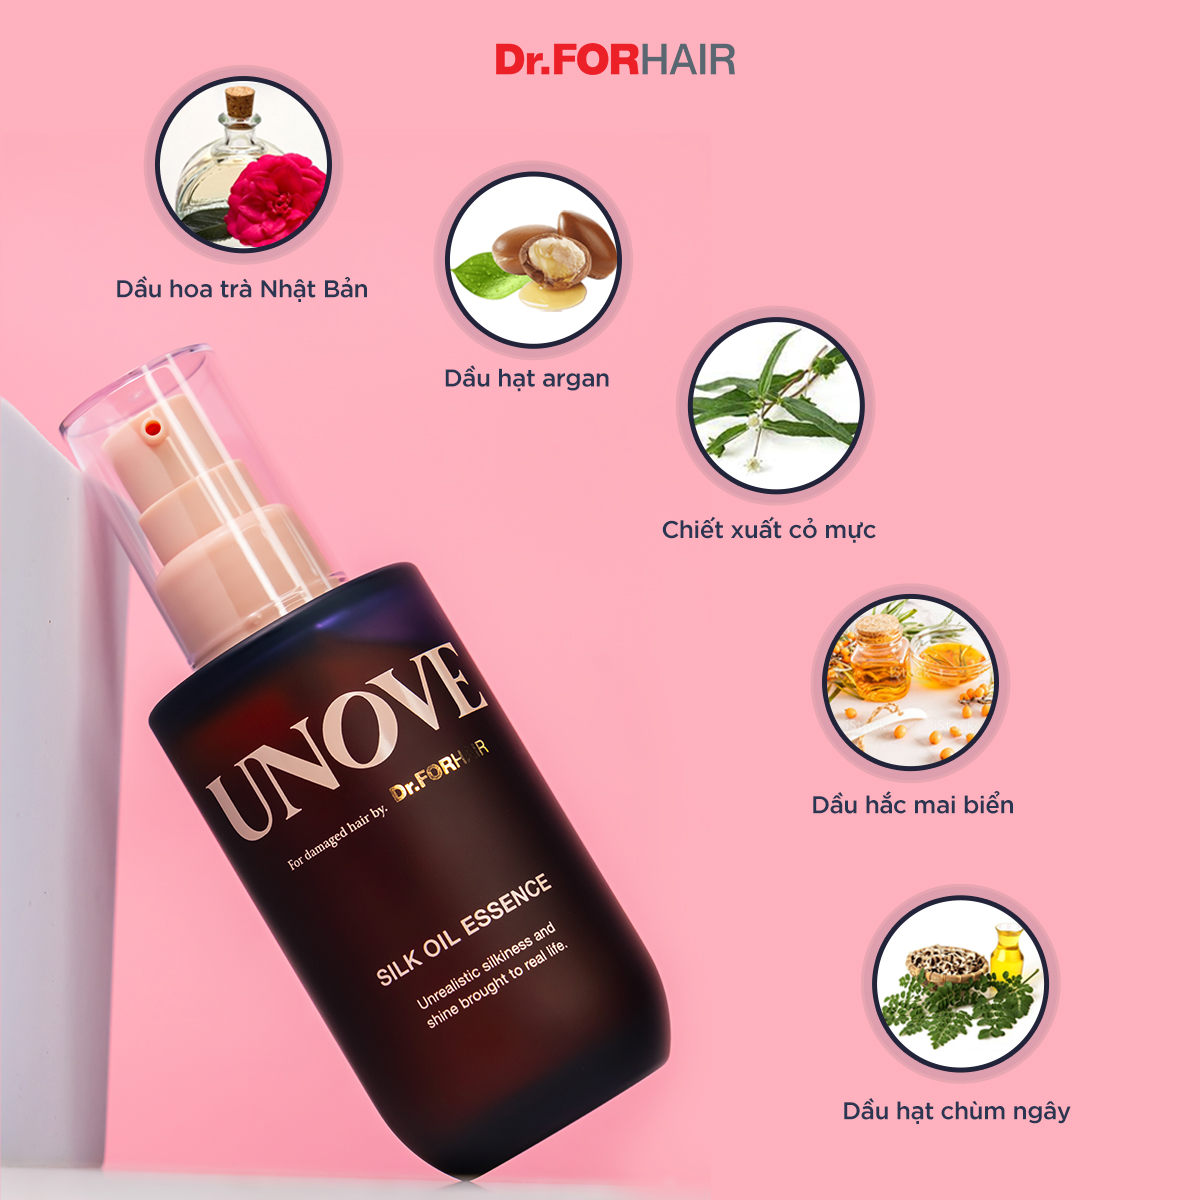 Tinh dầu dưỡng tóc làm mượt phục hồi tóc khô xơ chẻ ngọn Dr.FORHAIR Unove Silk Oil Essence 70ml